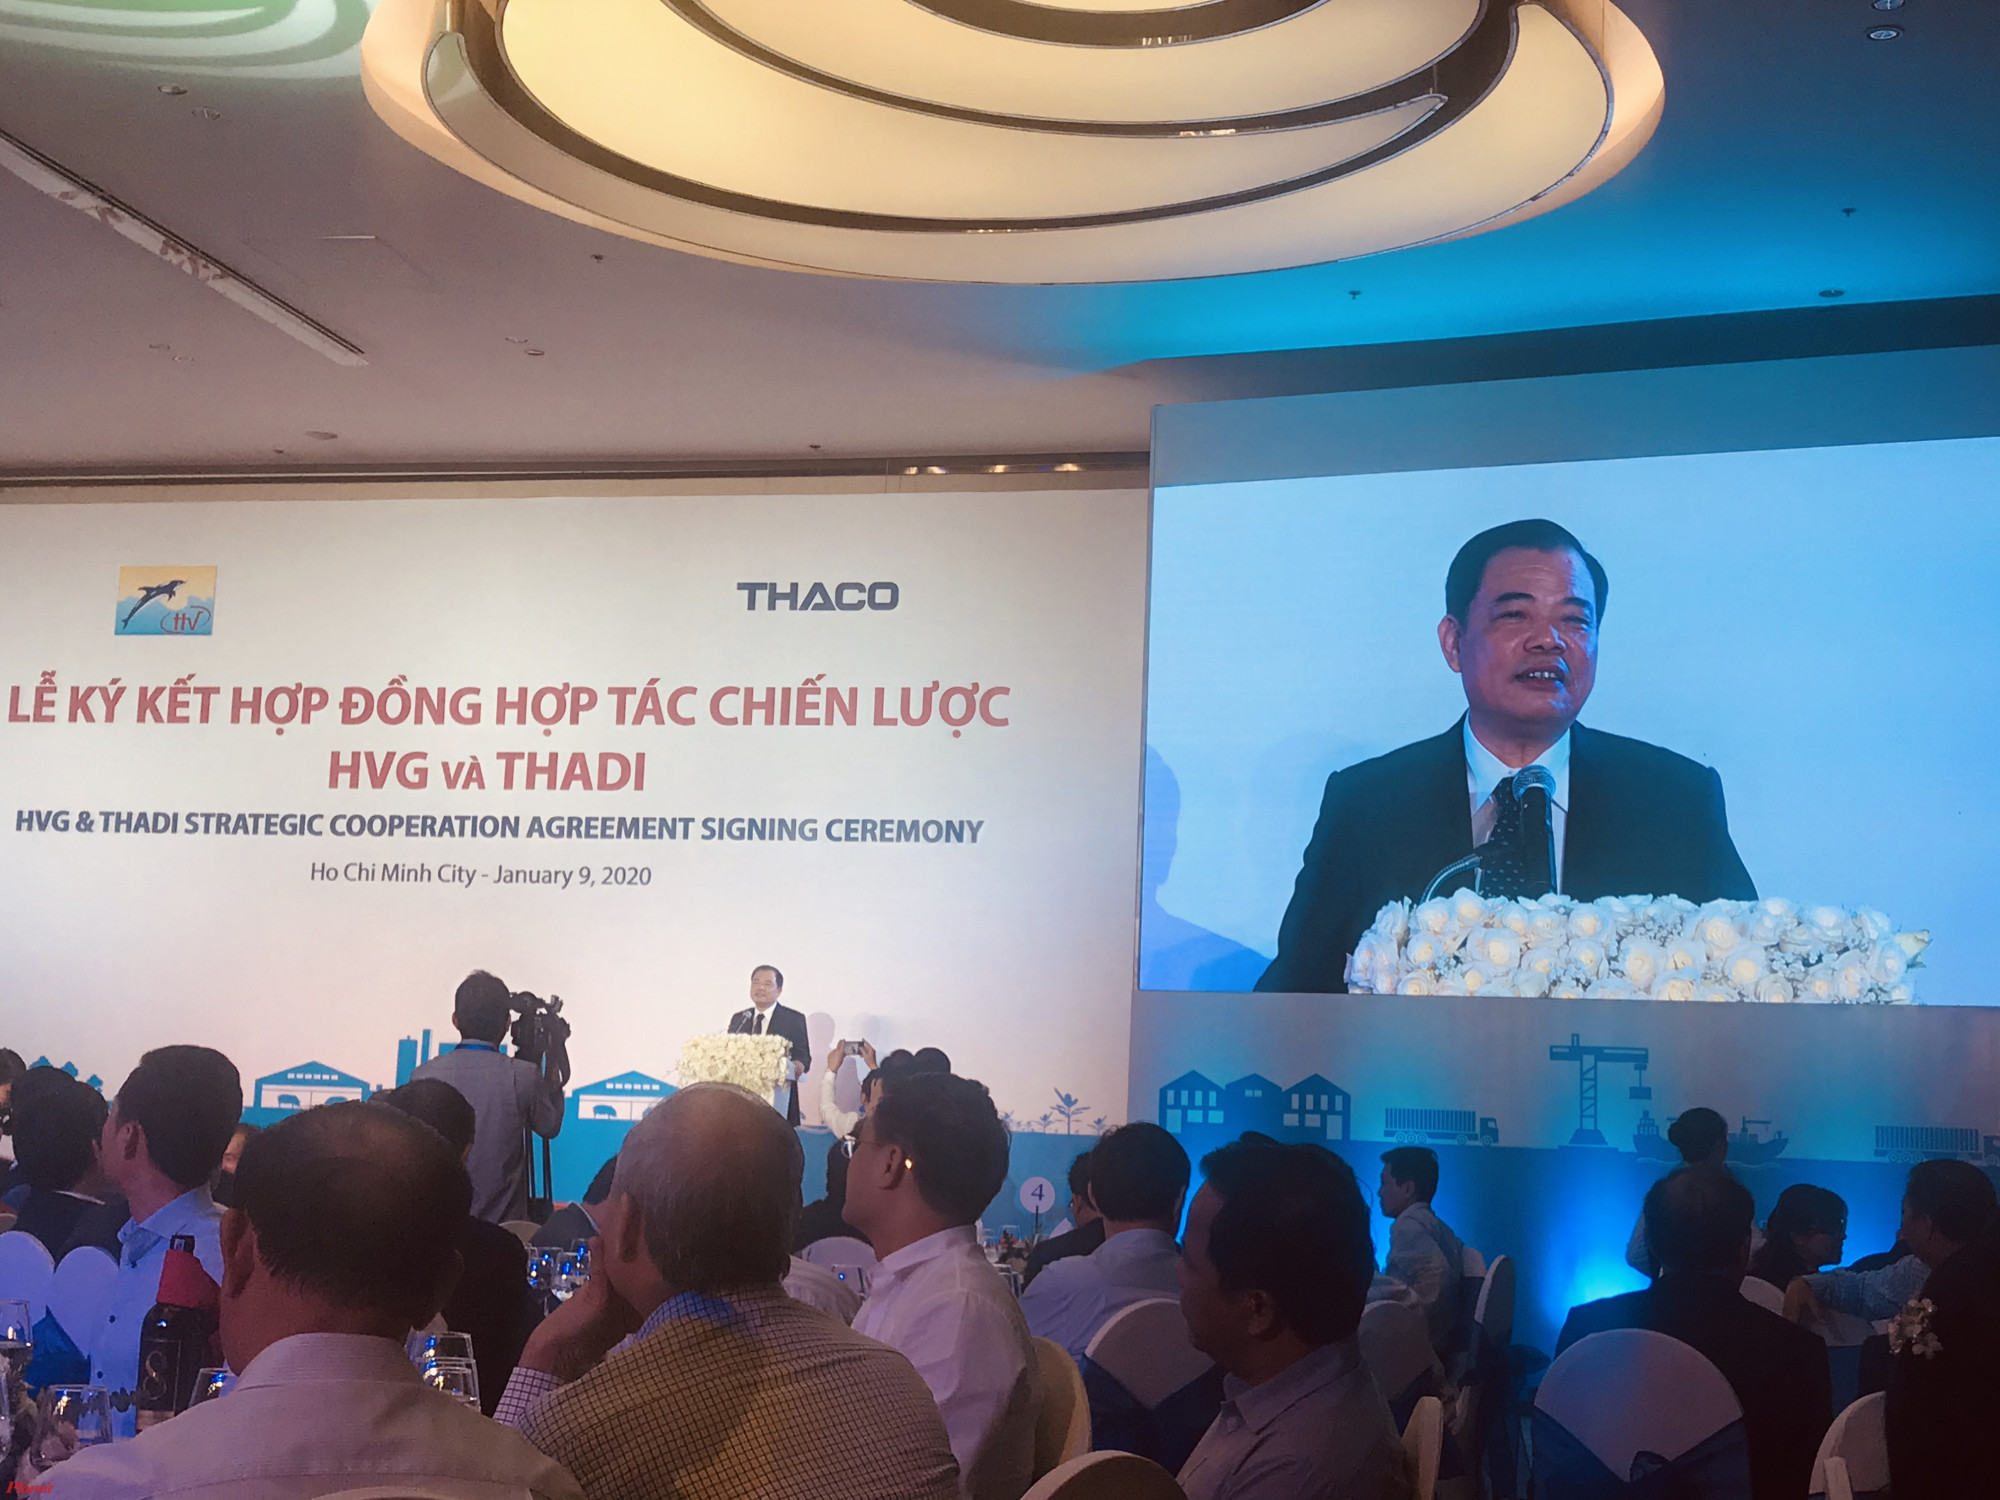 Bộ trưởng Bộ Nông nghiệp phát biểu tại buổi lễ ký kết của Thaco và Hùng Vương. Ảnh: Quốc Thái